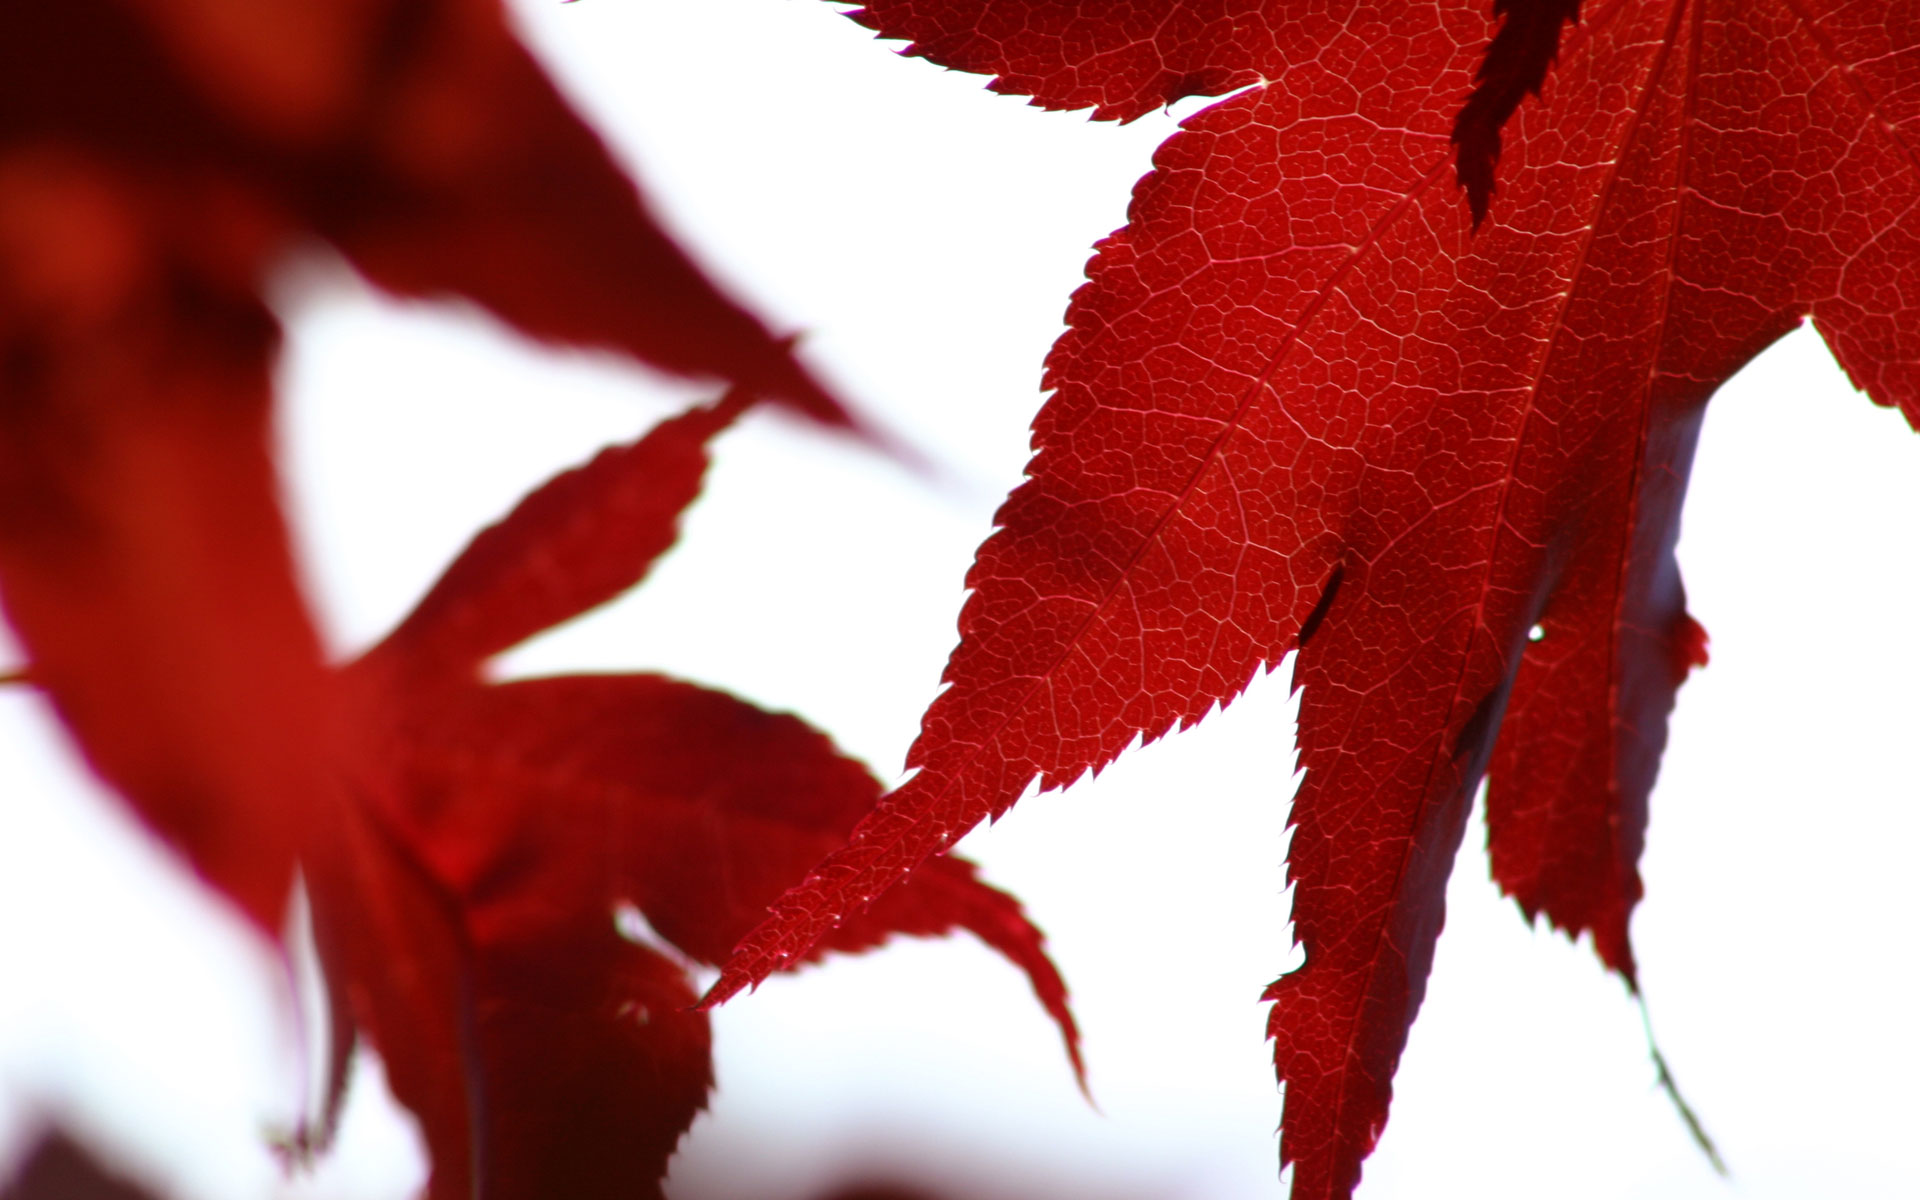 Autumn foliage on a high-resolution desktop wallpaper.